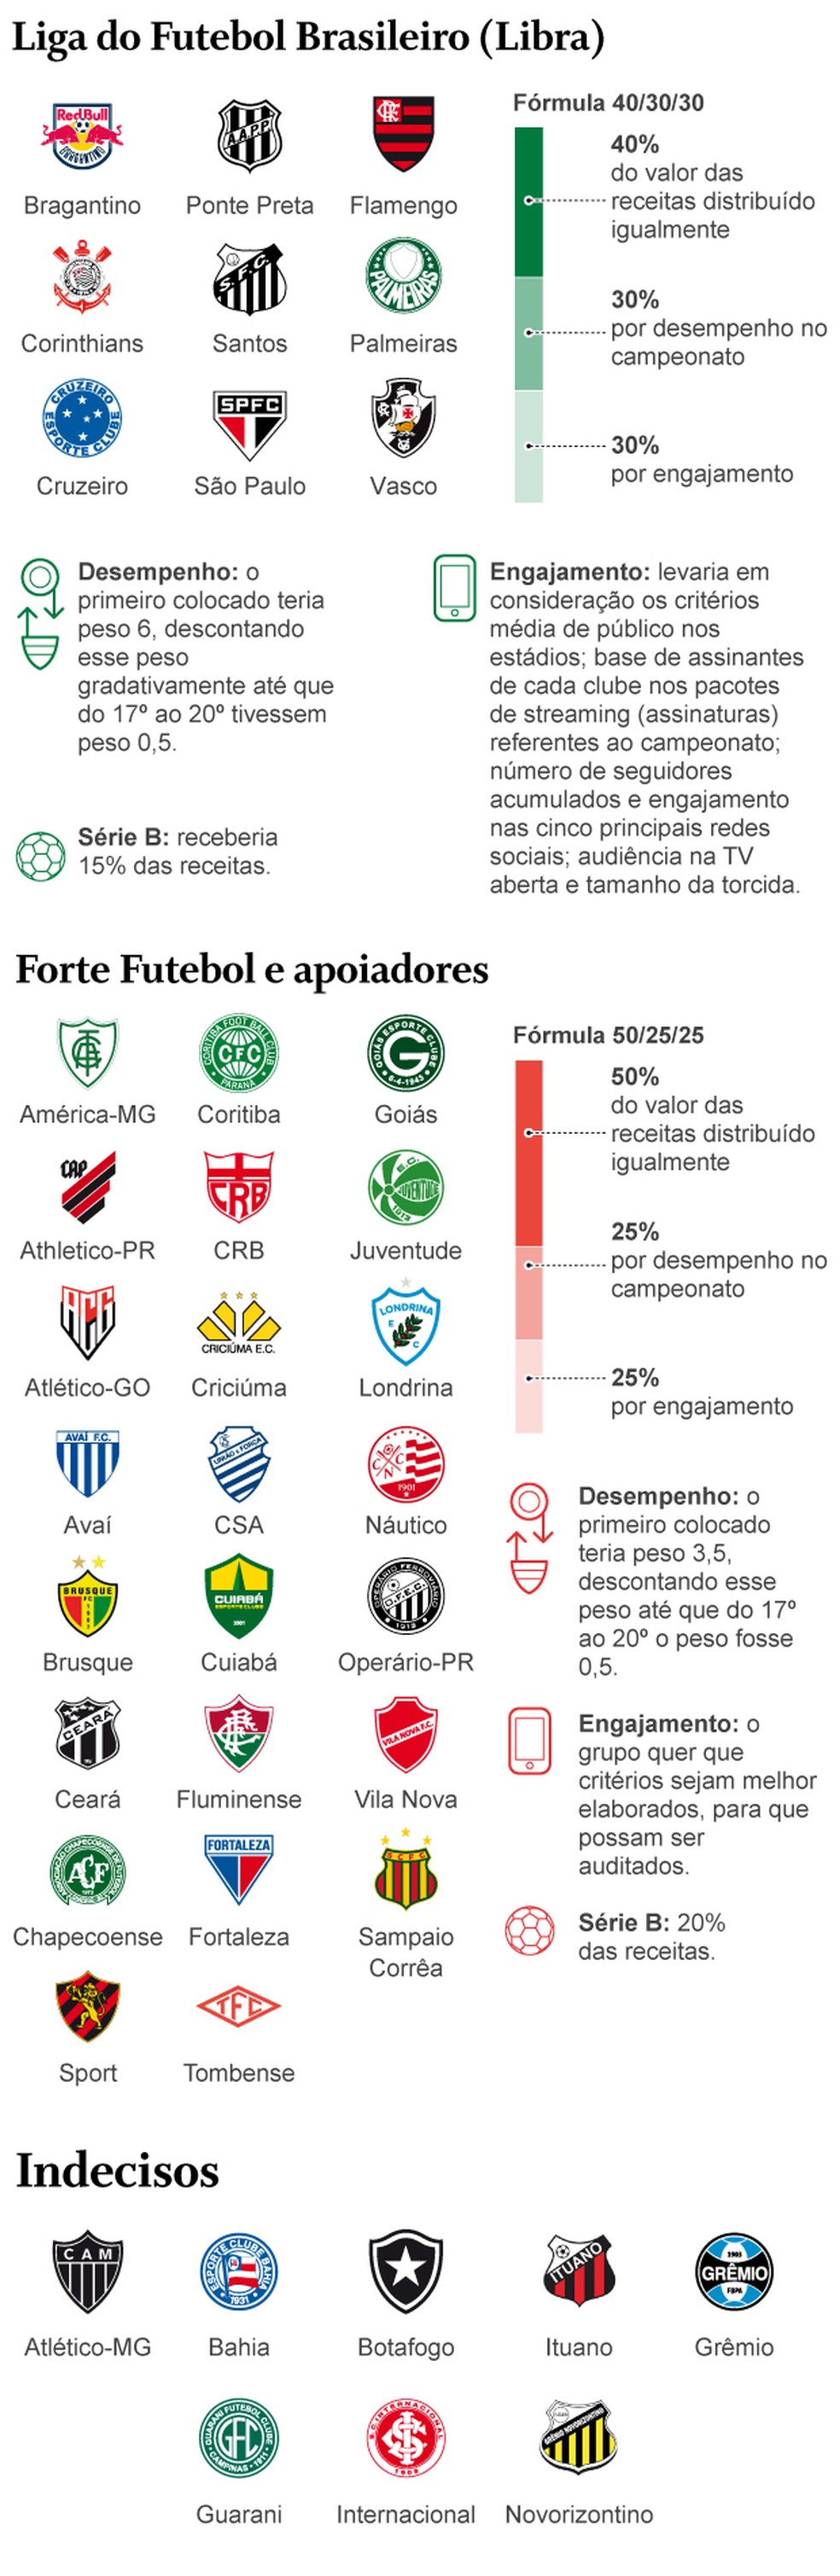 Nova liga de clubes do Brasil é fundada com 8 times e sem acordo coletivo -  Placar - O futebol sem barreiras para você